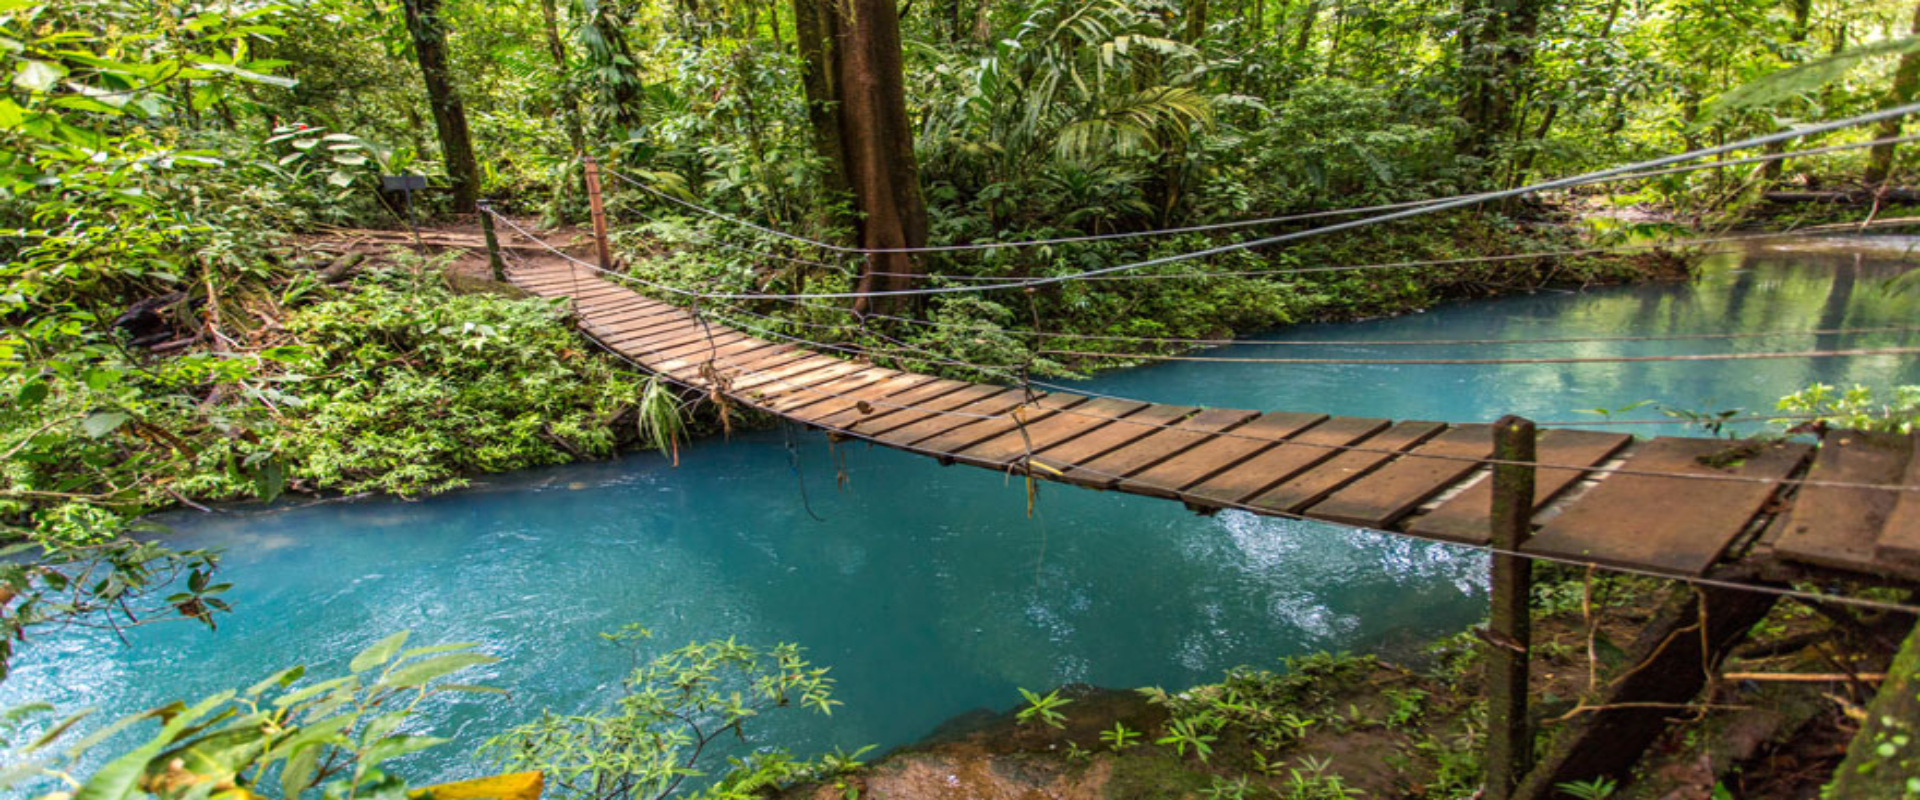 Río Celeste and Tenorio Volcano Guided Rainforest Hike  | Costa Rica Jade Tours